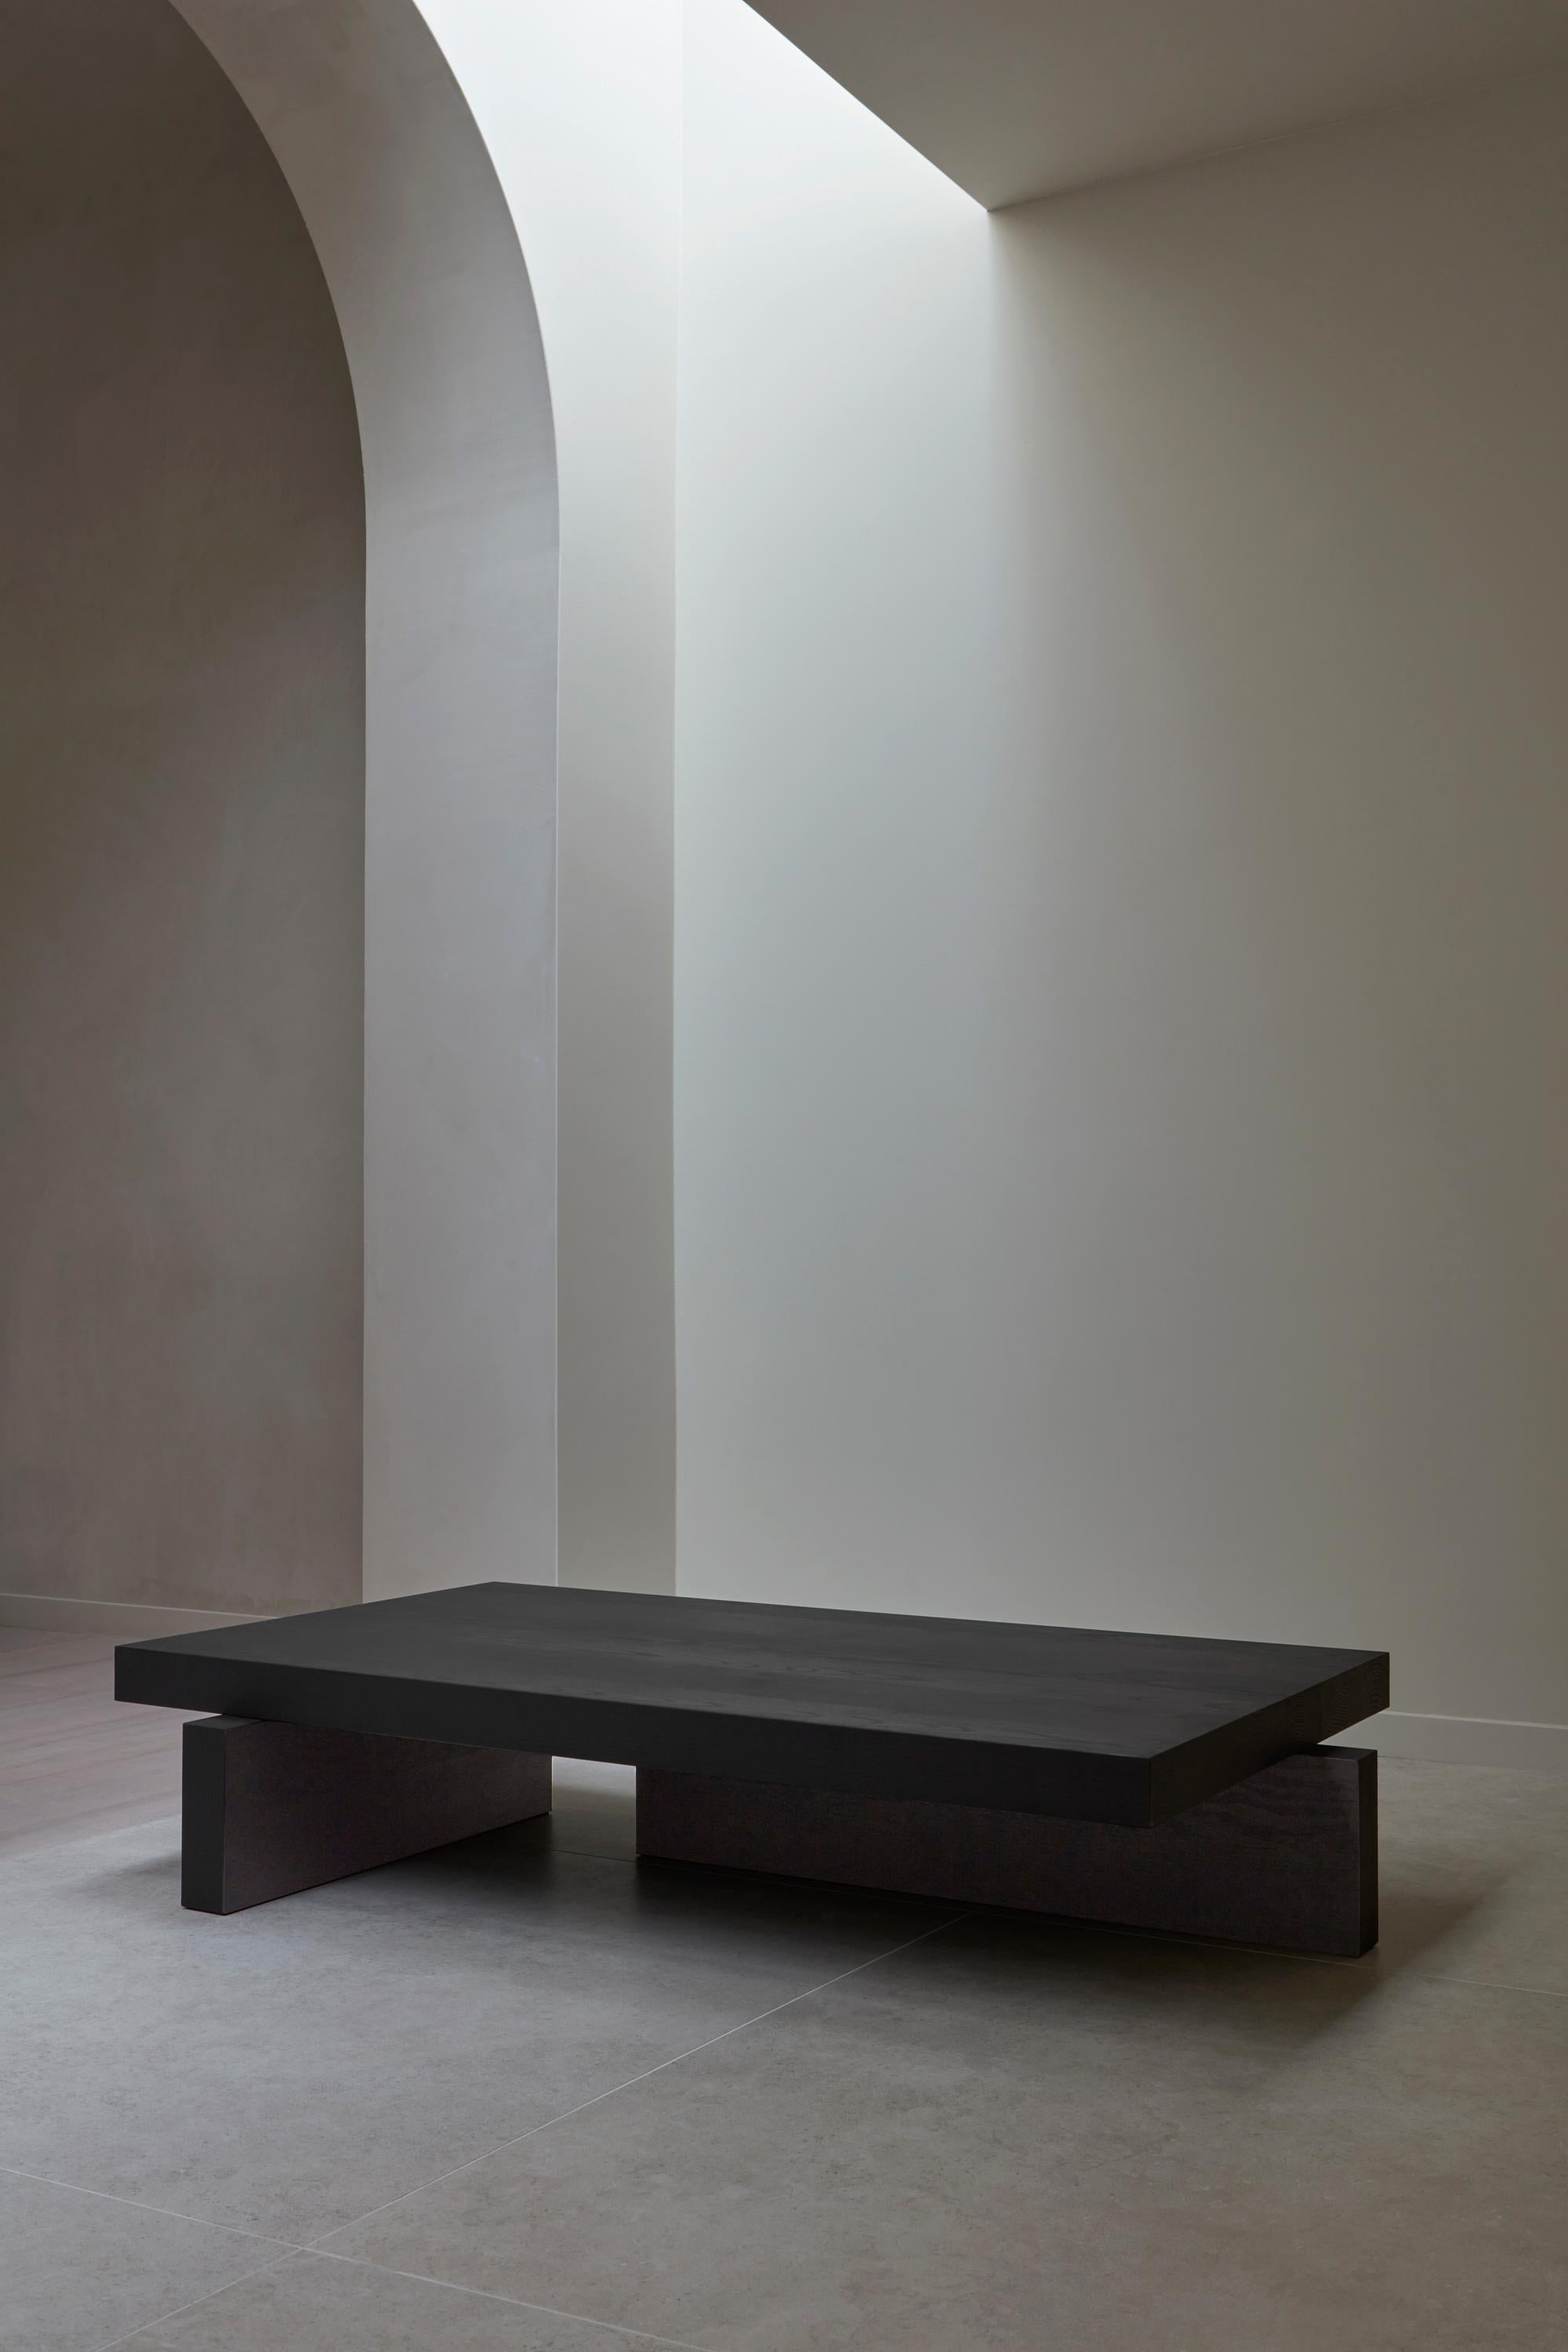 Japanische Ästhetik kombiniert mit brutalistischen Volumina. Der Hari Table ist ein Couchtisch aus Massivholz mit asymmetrischen Beinen und großzügigen Proportionen, inspiriert von traditionellen japanischen Holzkonstruktionen. Entworfen von Aad Bos